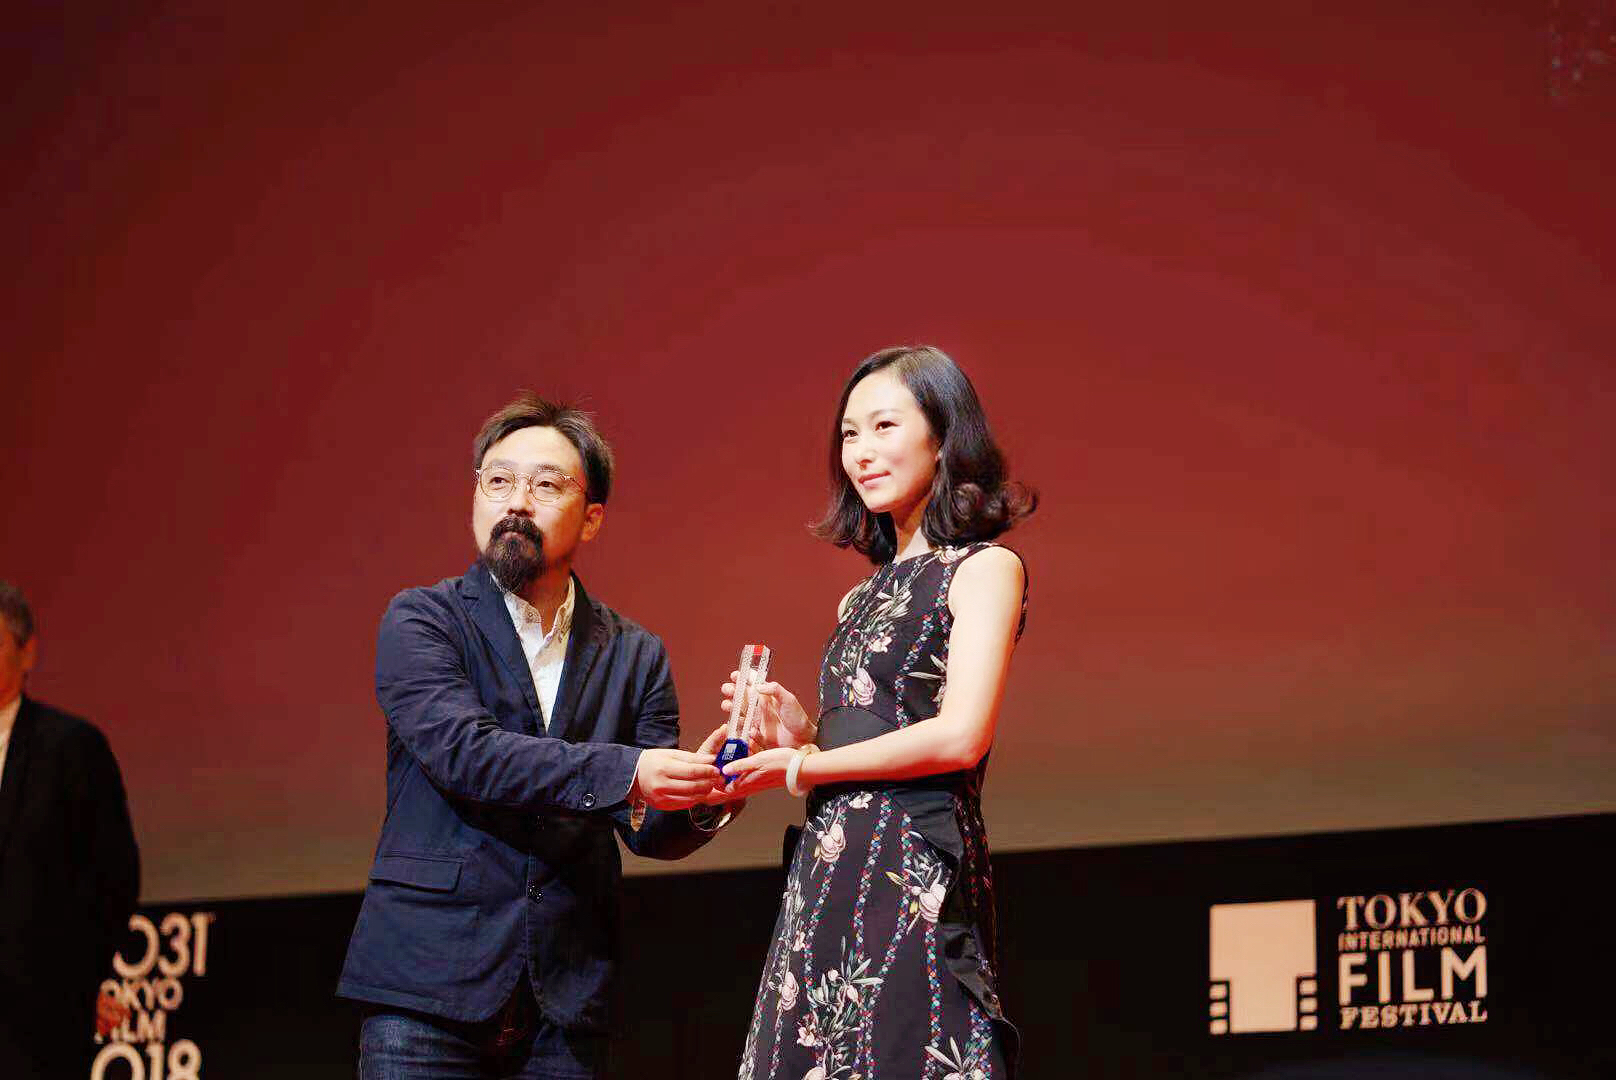 《第一次的离别》斩获东京国际电影节亚洲未来单元最佳影片